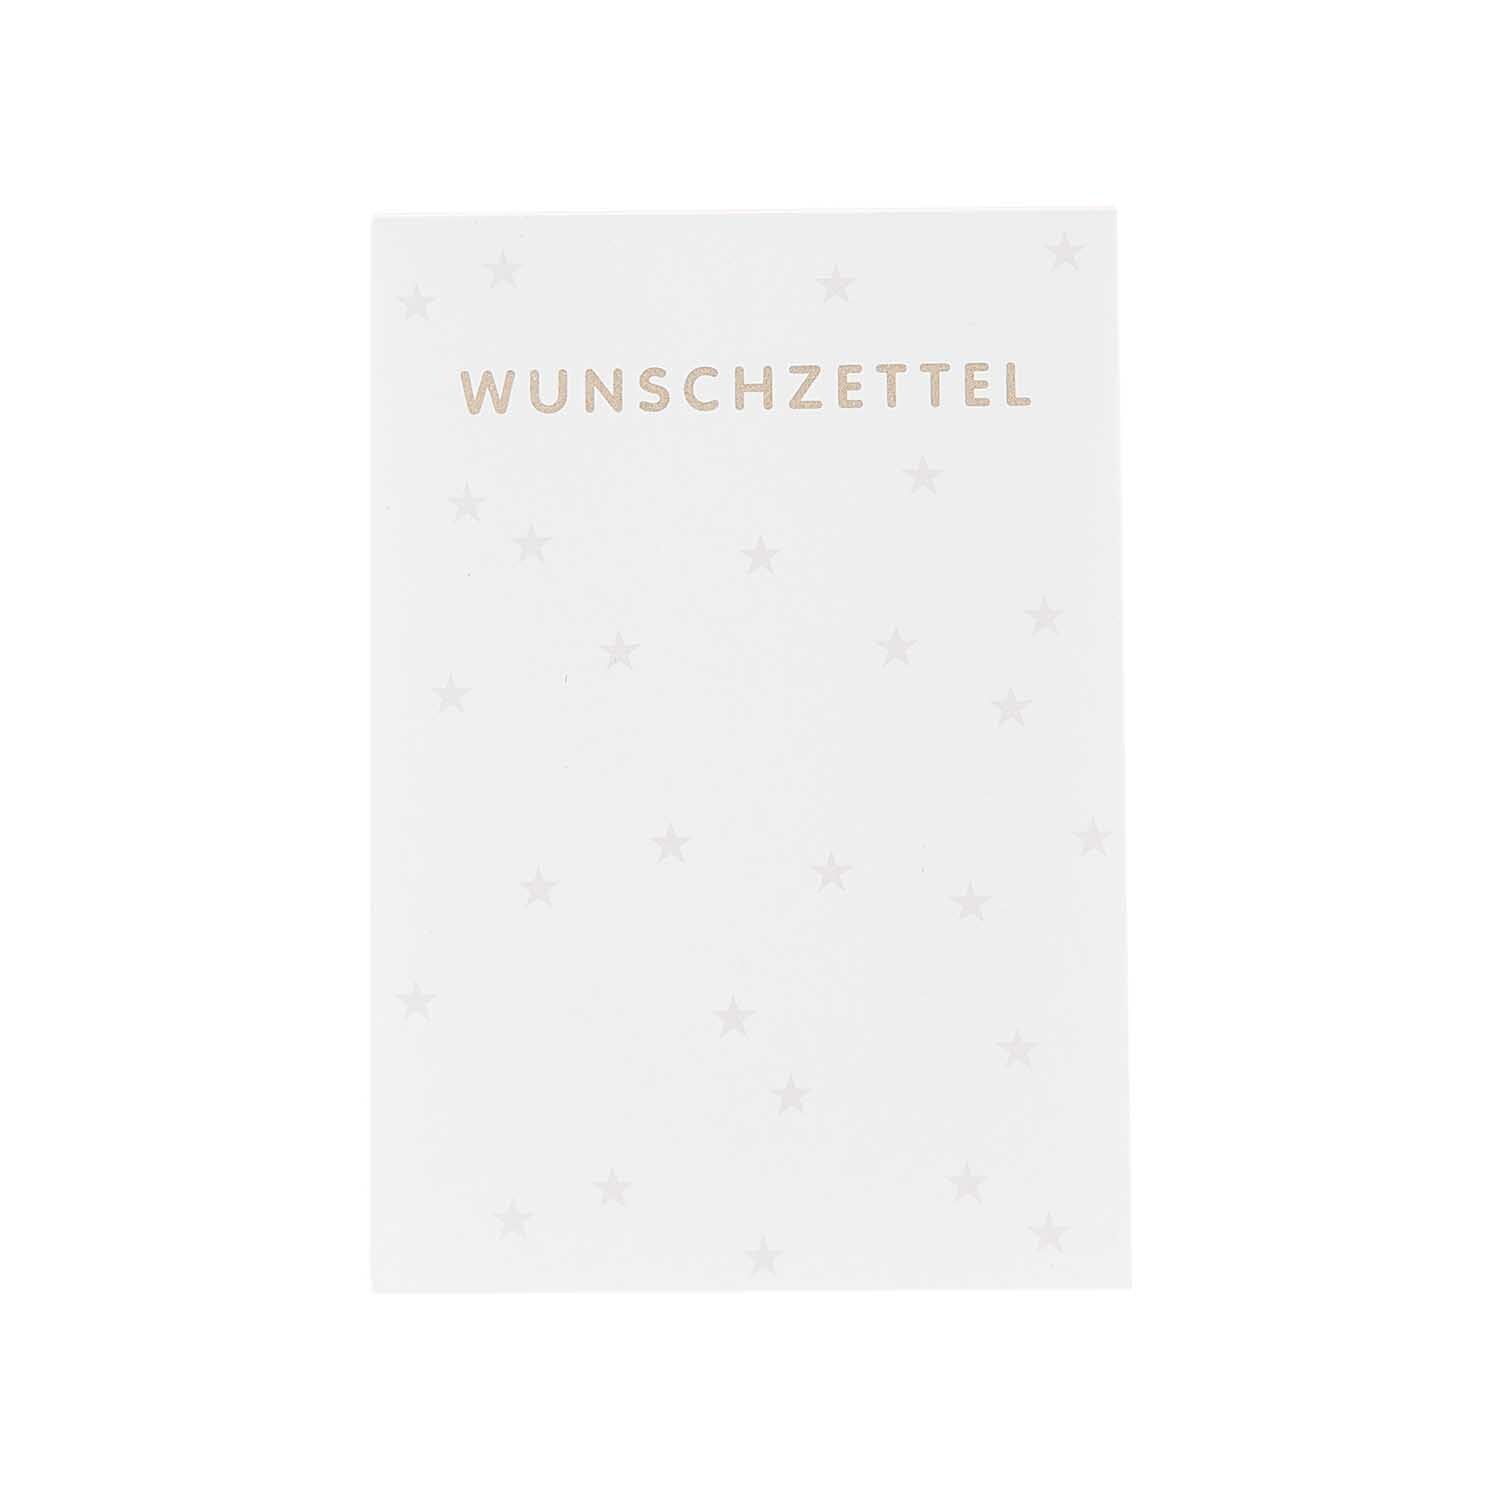 Paper Poetry Wunschzettelblock A8 25 Blatt 100g/m²